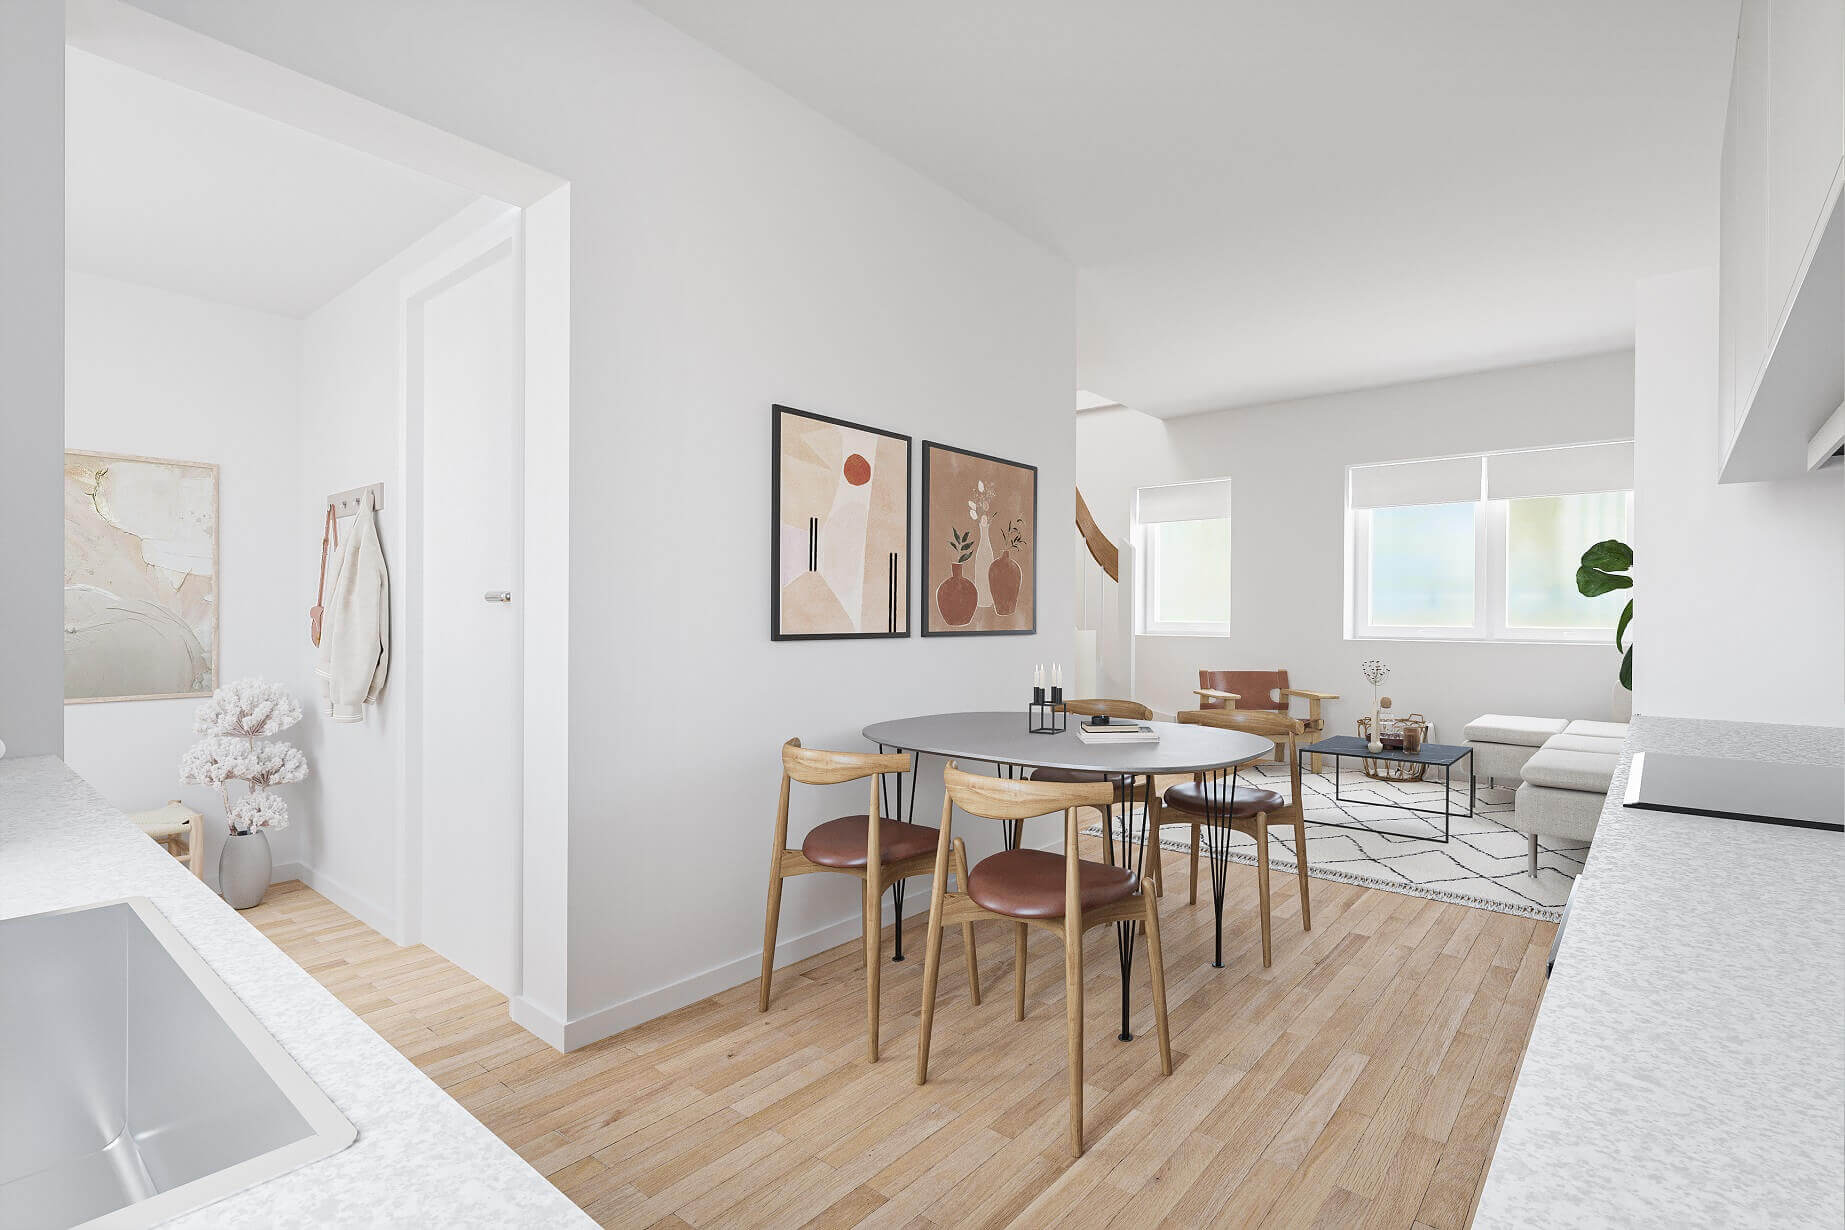 Humlebo Gruppen udlejer helt nye 2-værelses lejligheder på hjørnet af Kochsgade og Damhusvej i Odense